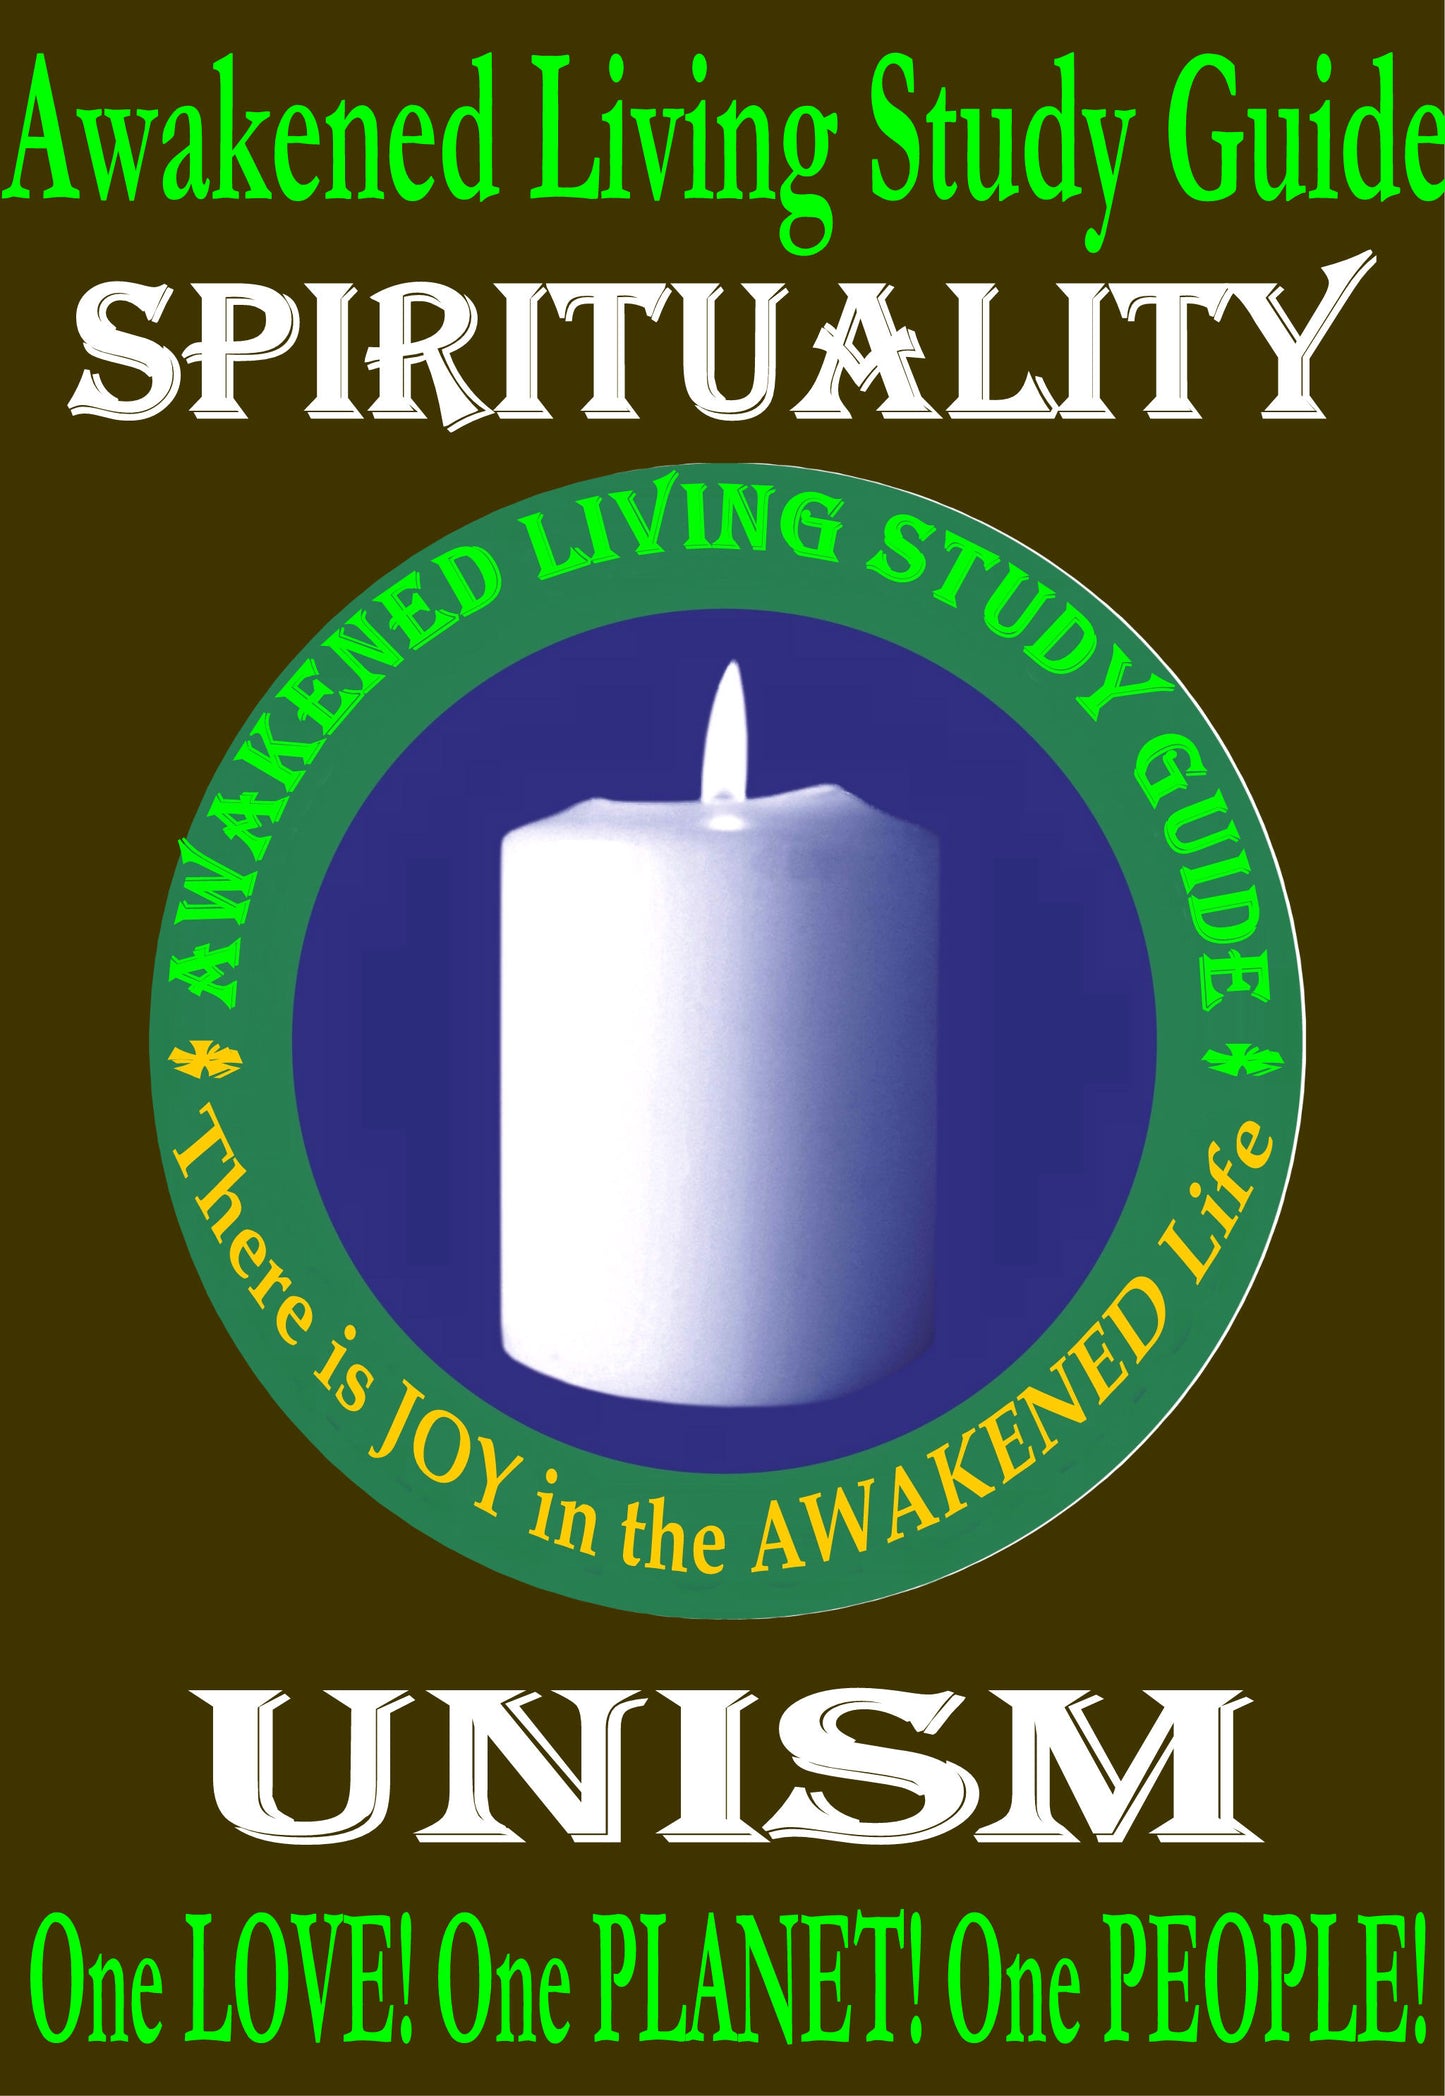 Awakened Living Study Program Sacred Texts Study Spirituality Bible Study on a USB